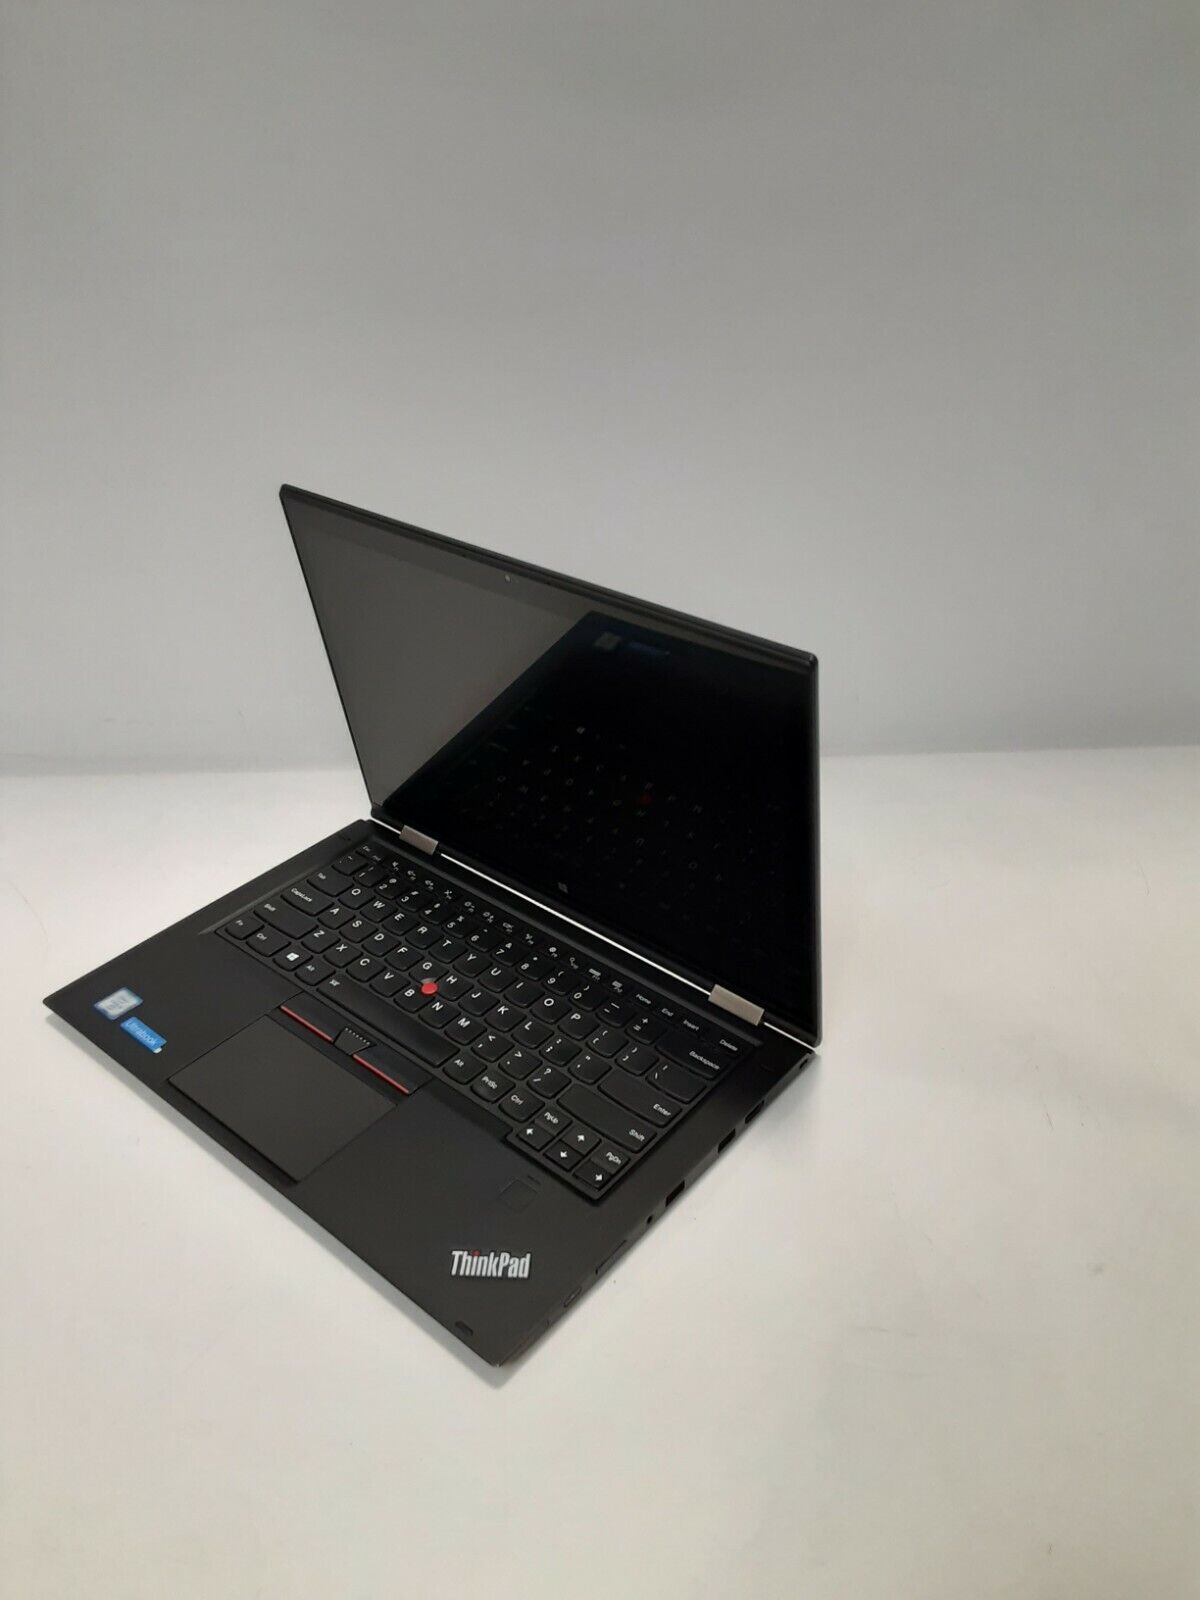 * Lenovo ThinkPad X1 Yoga 2-in-1 Intel i5-6300U 2.4GHz, 8GB RAM, 256GB SSD